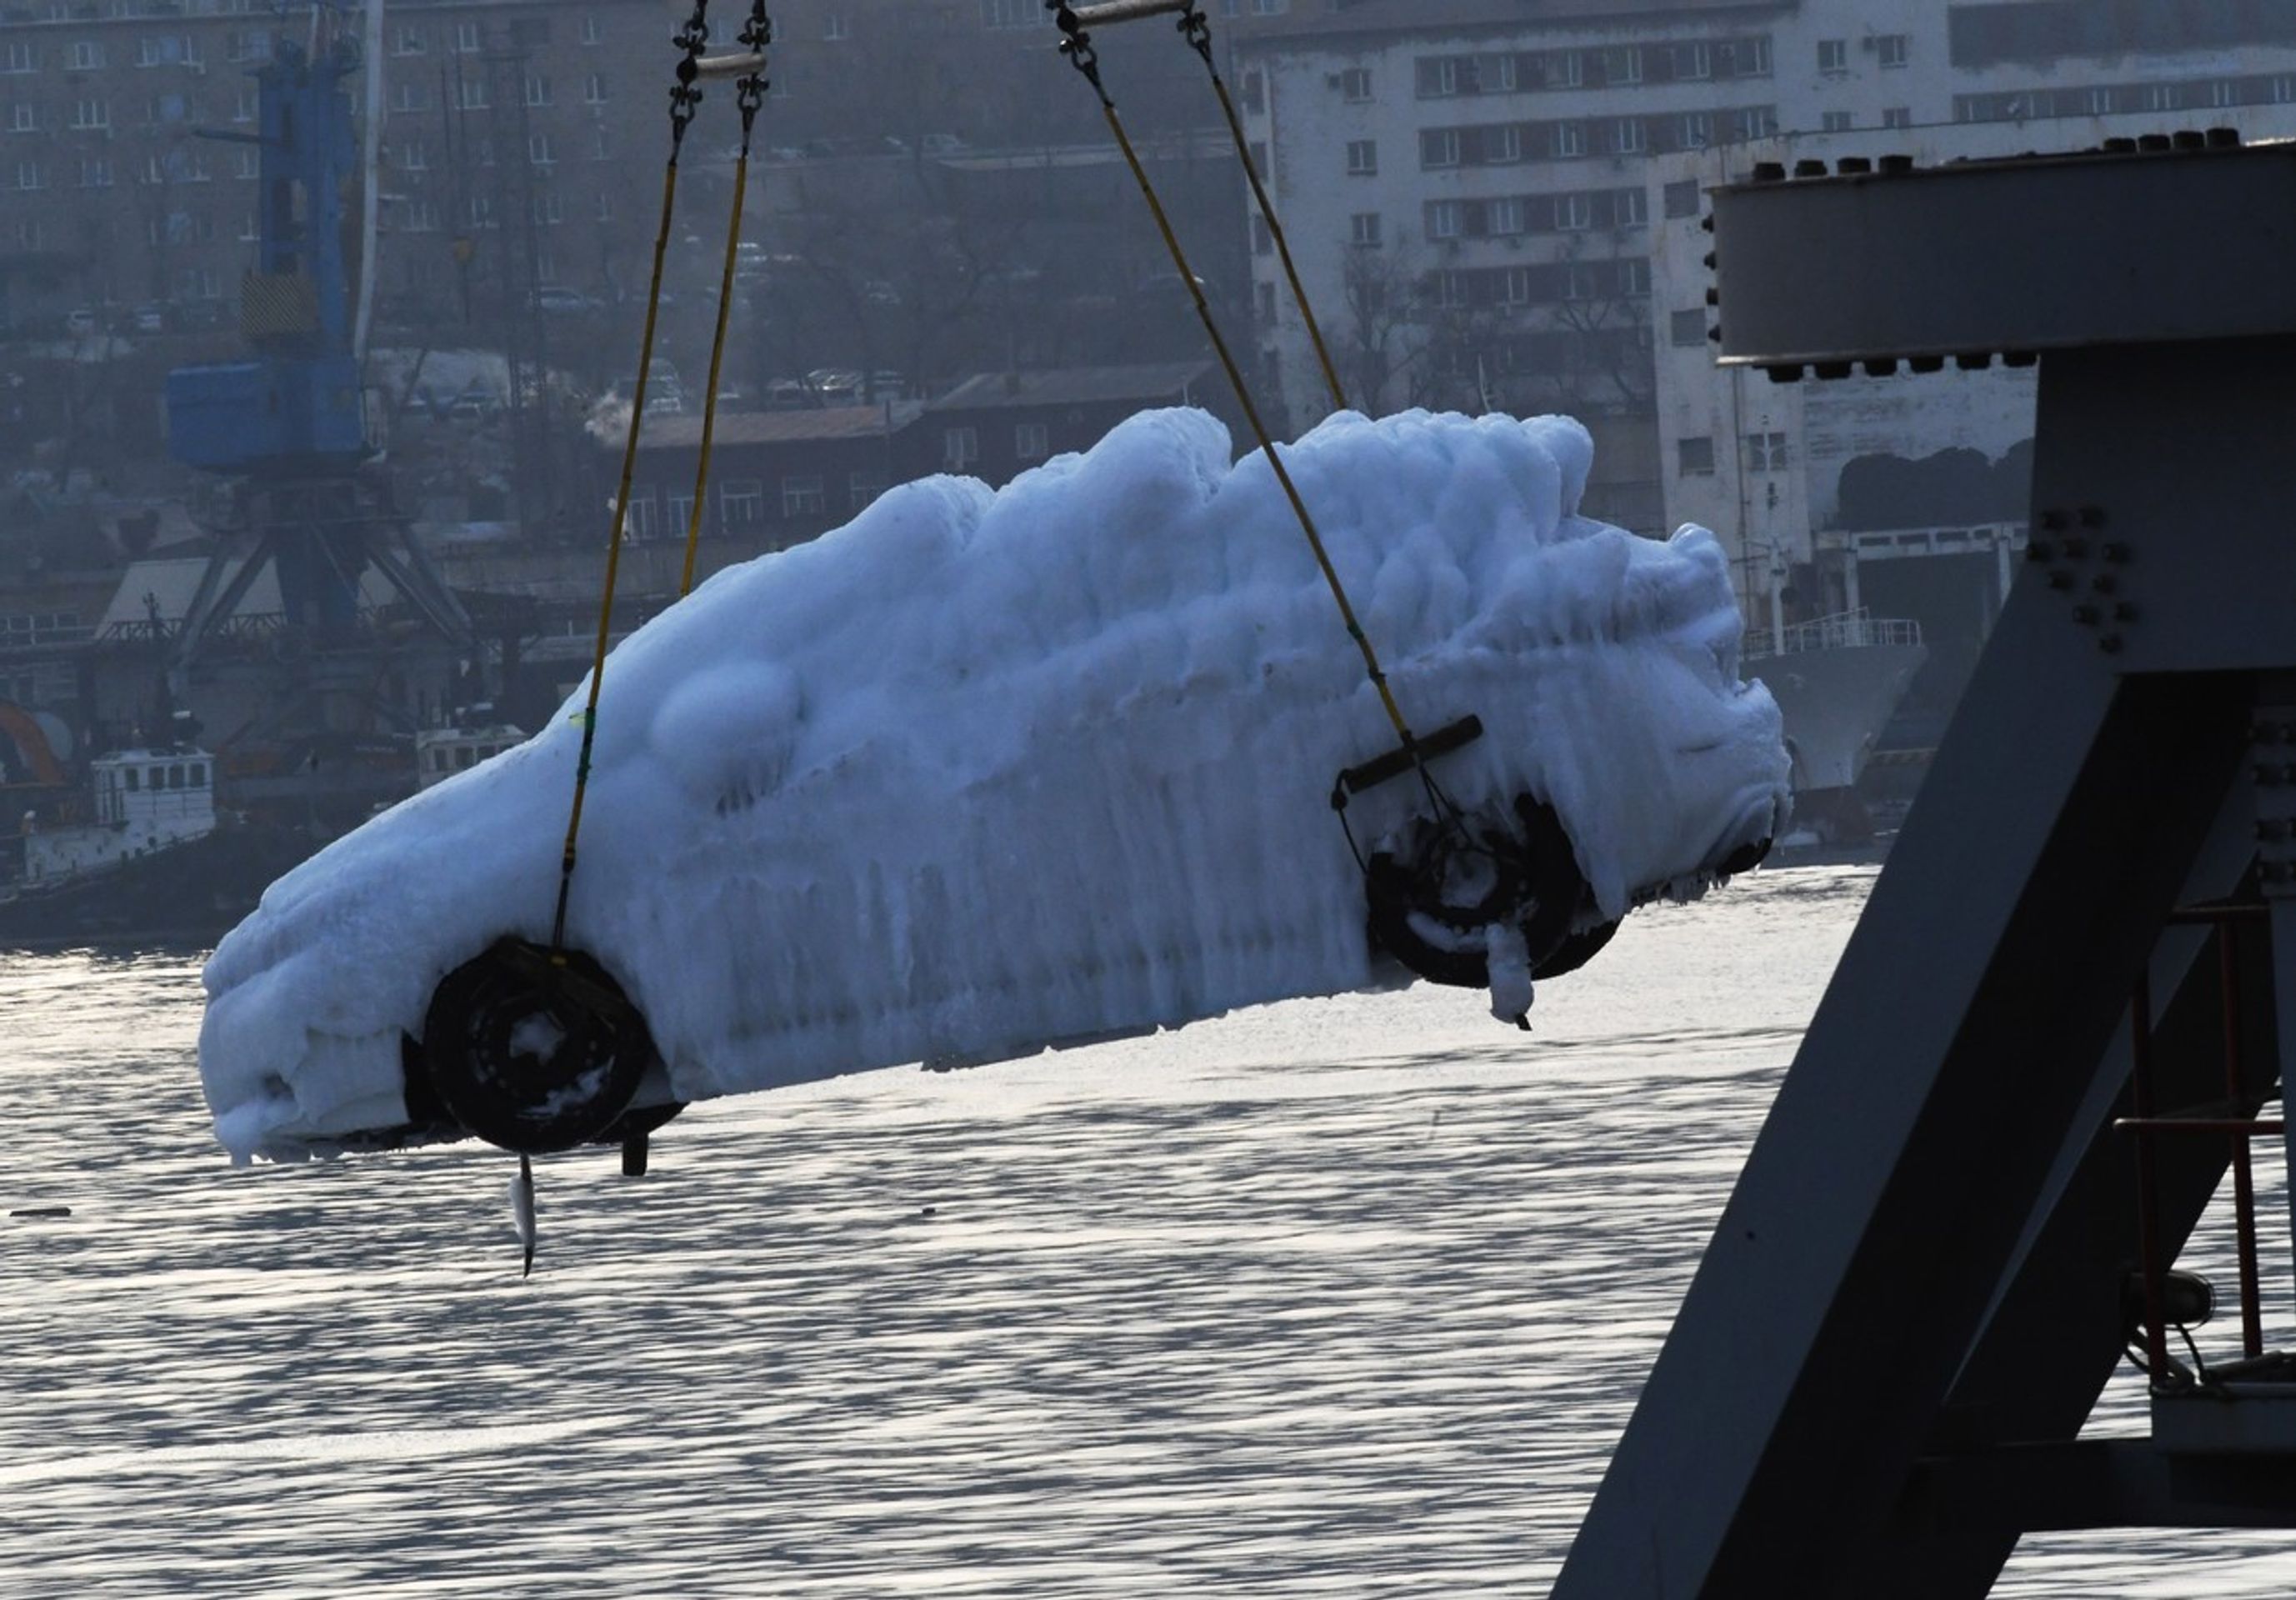 Nákladní loď Sun Rio s nákladem aut uvězněných v ledu - Nákladní loď Sun Rio s nákladem aut uvězněných v ledu (4/5)